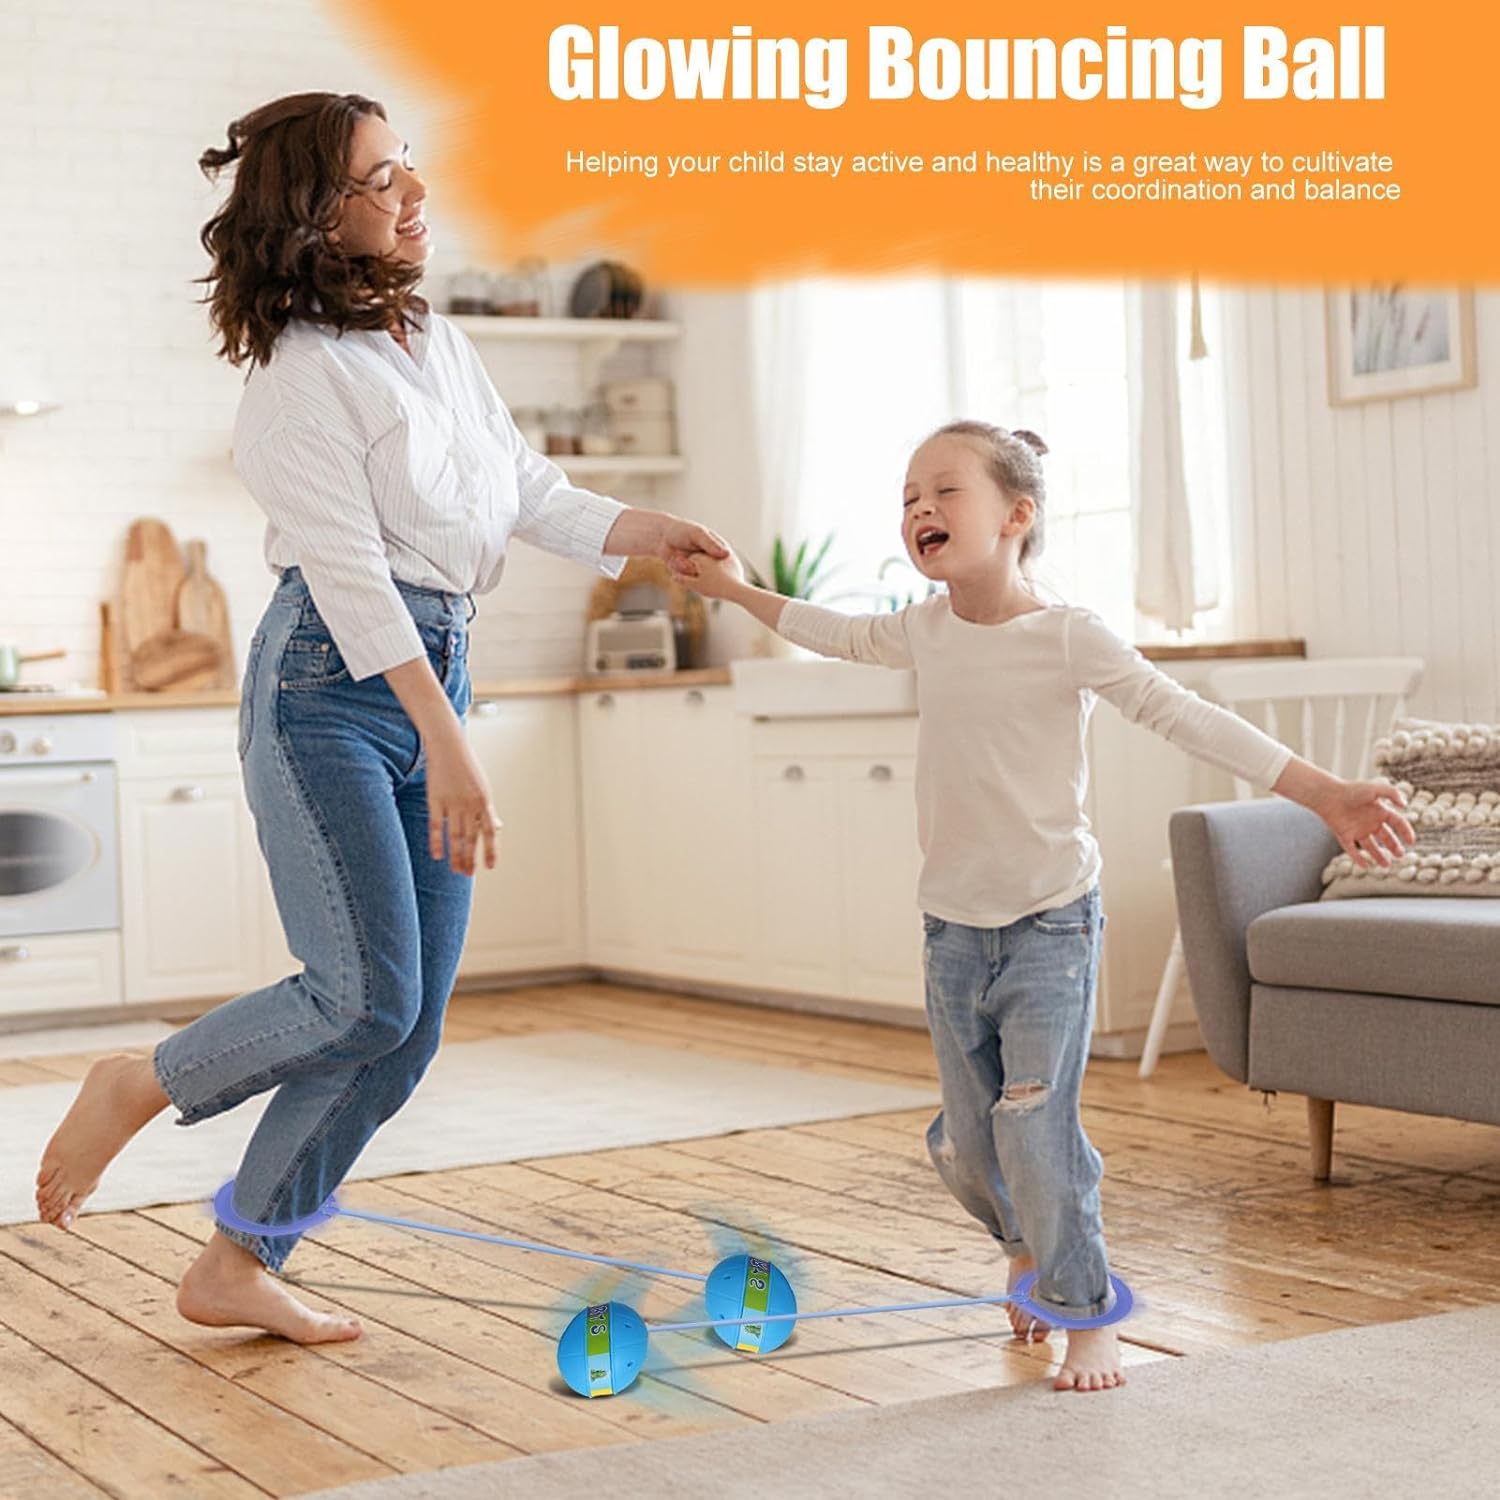 Glowing Bouncing Ball